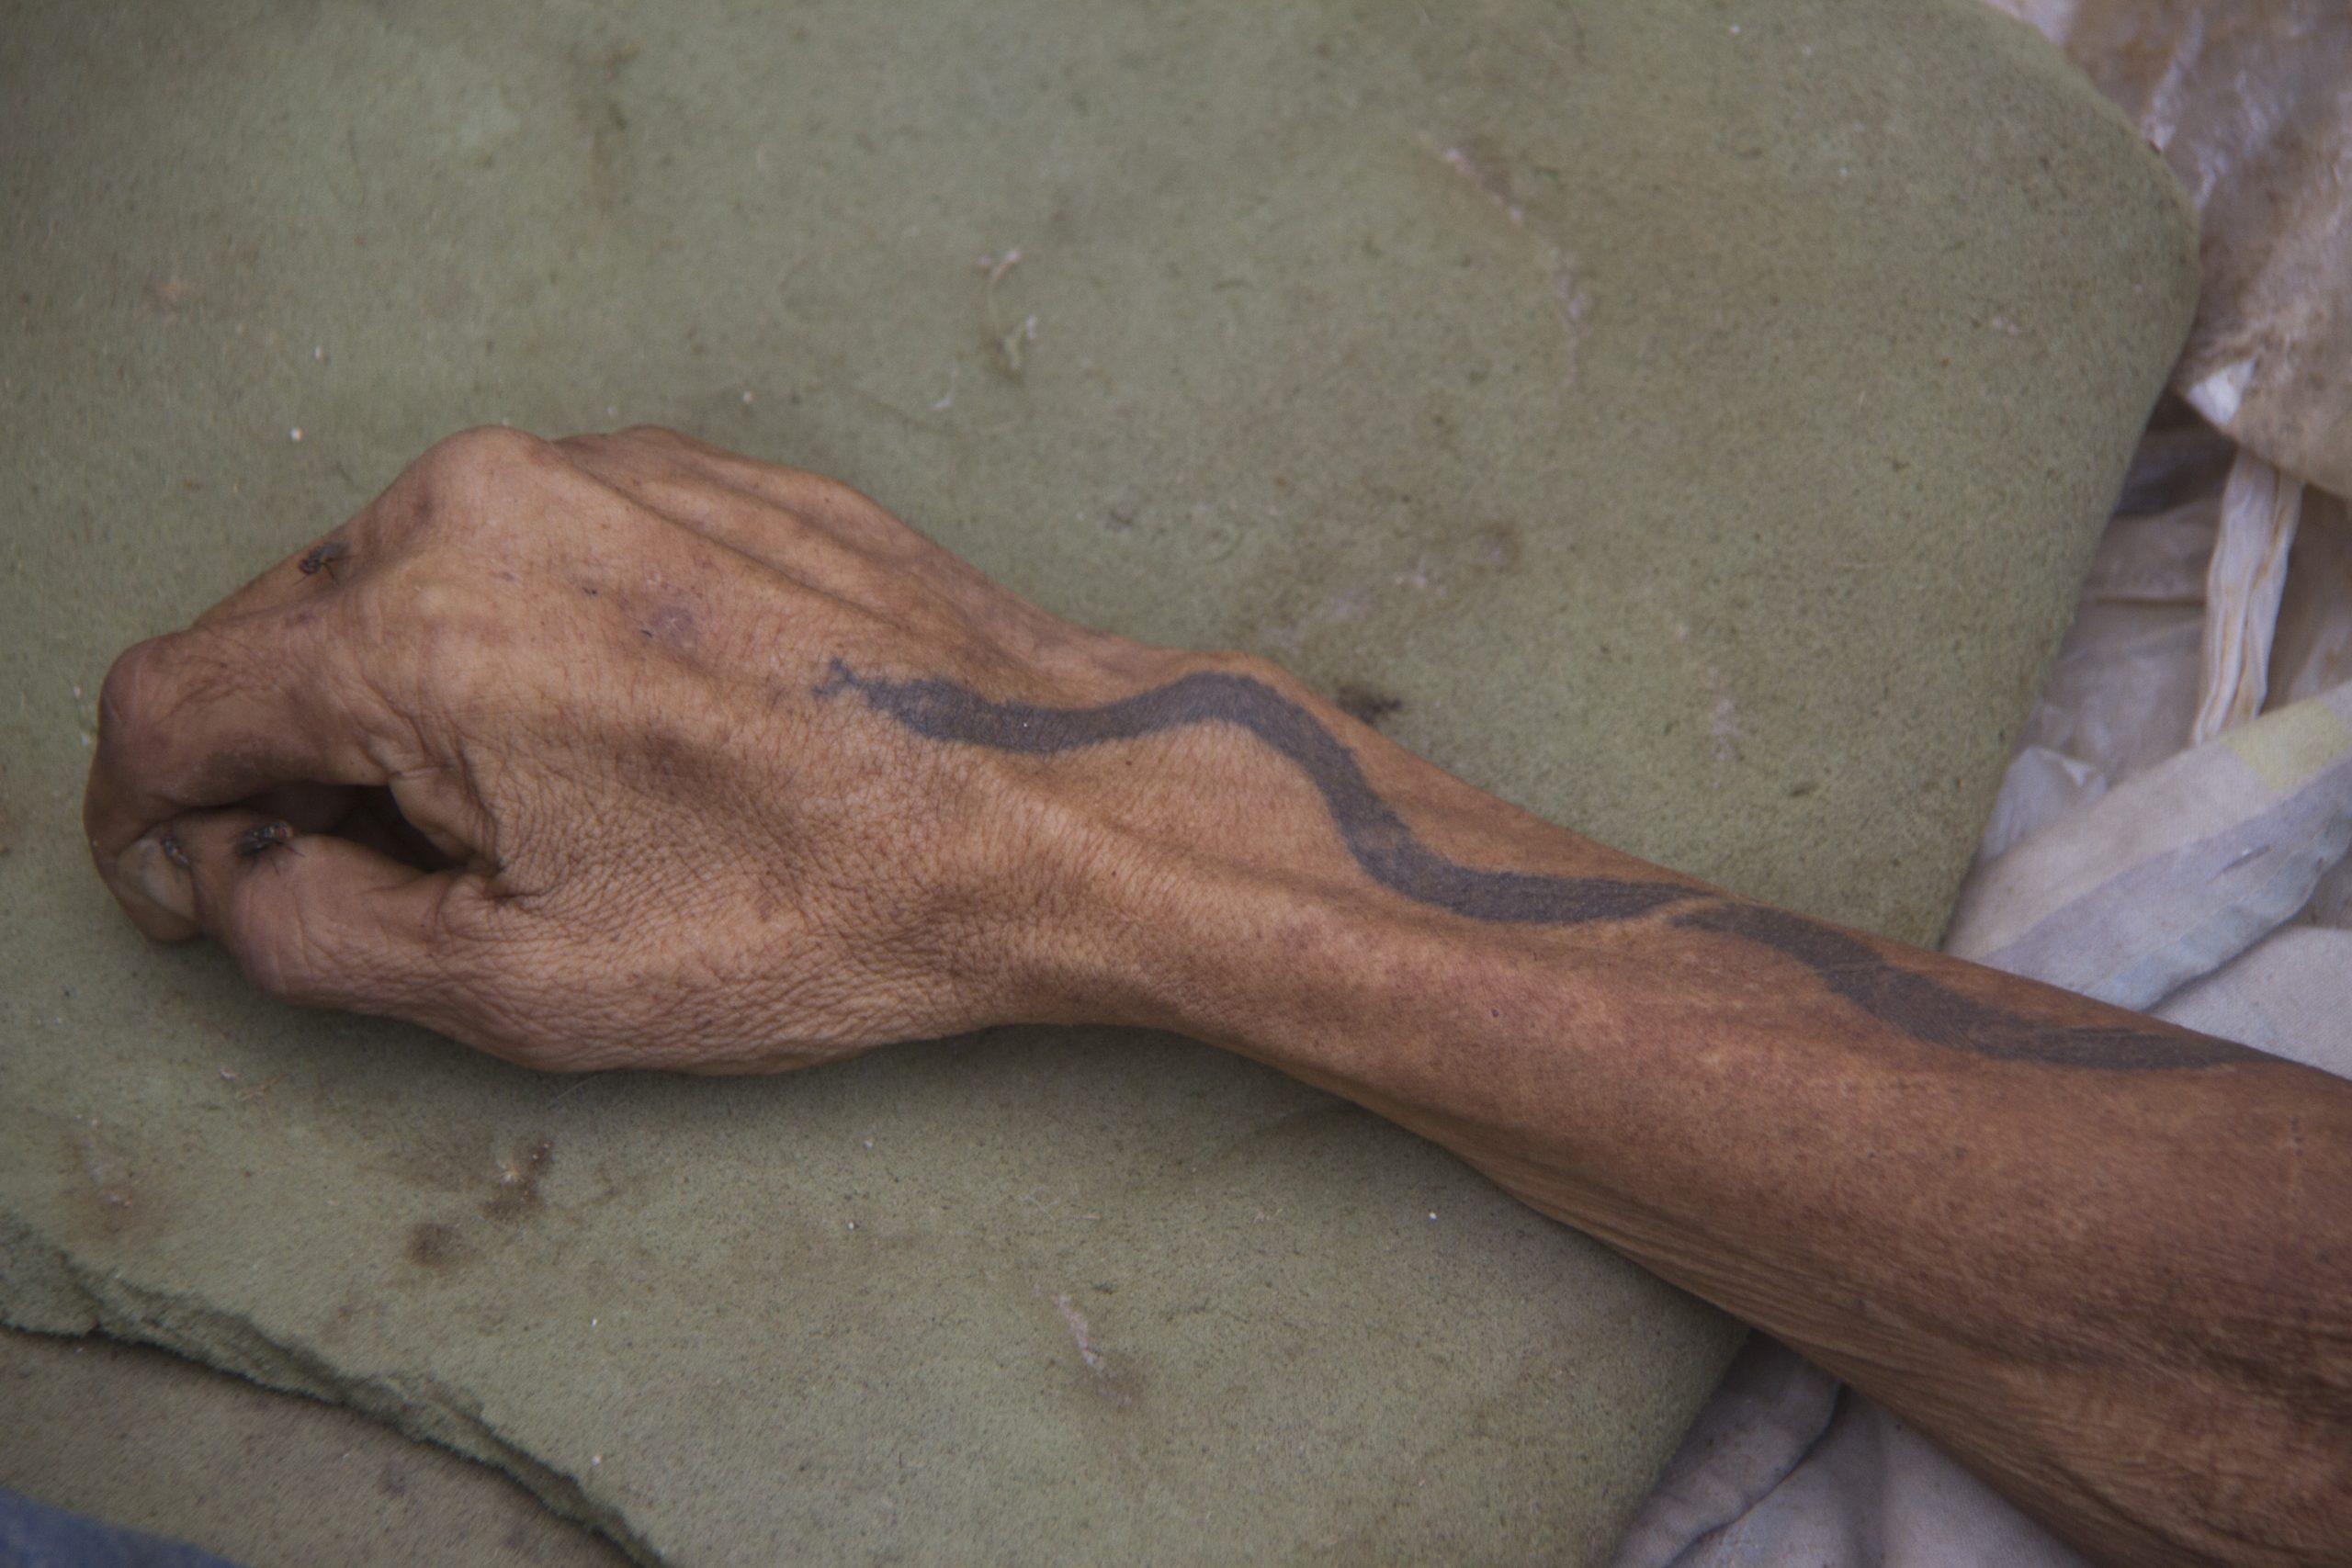  Por los tatuajes identifican el hombre que pereció en las adyacencias del Fenelón Díaz